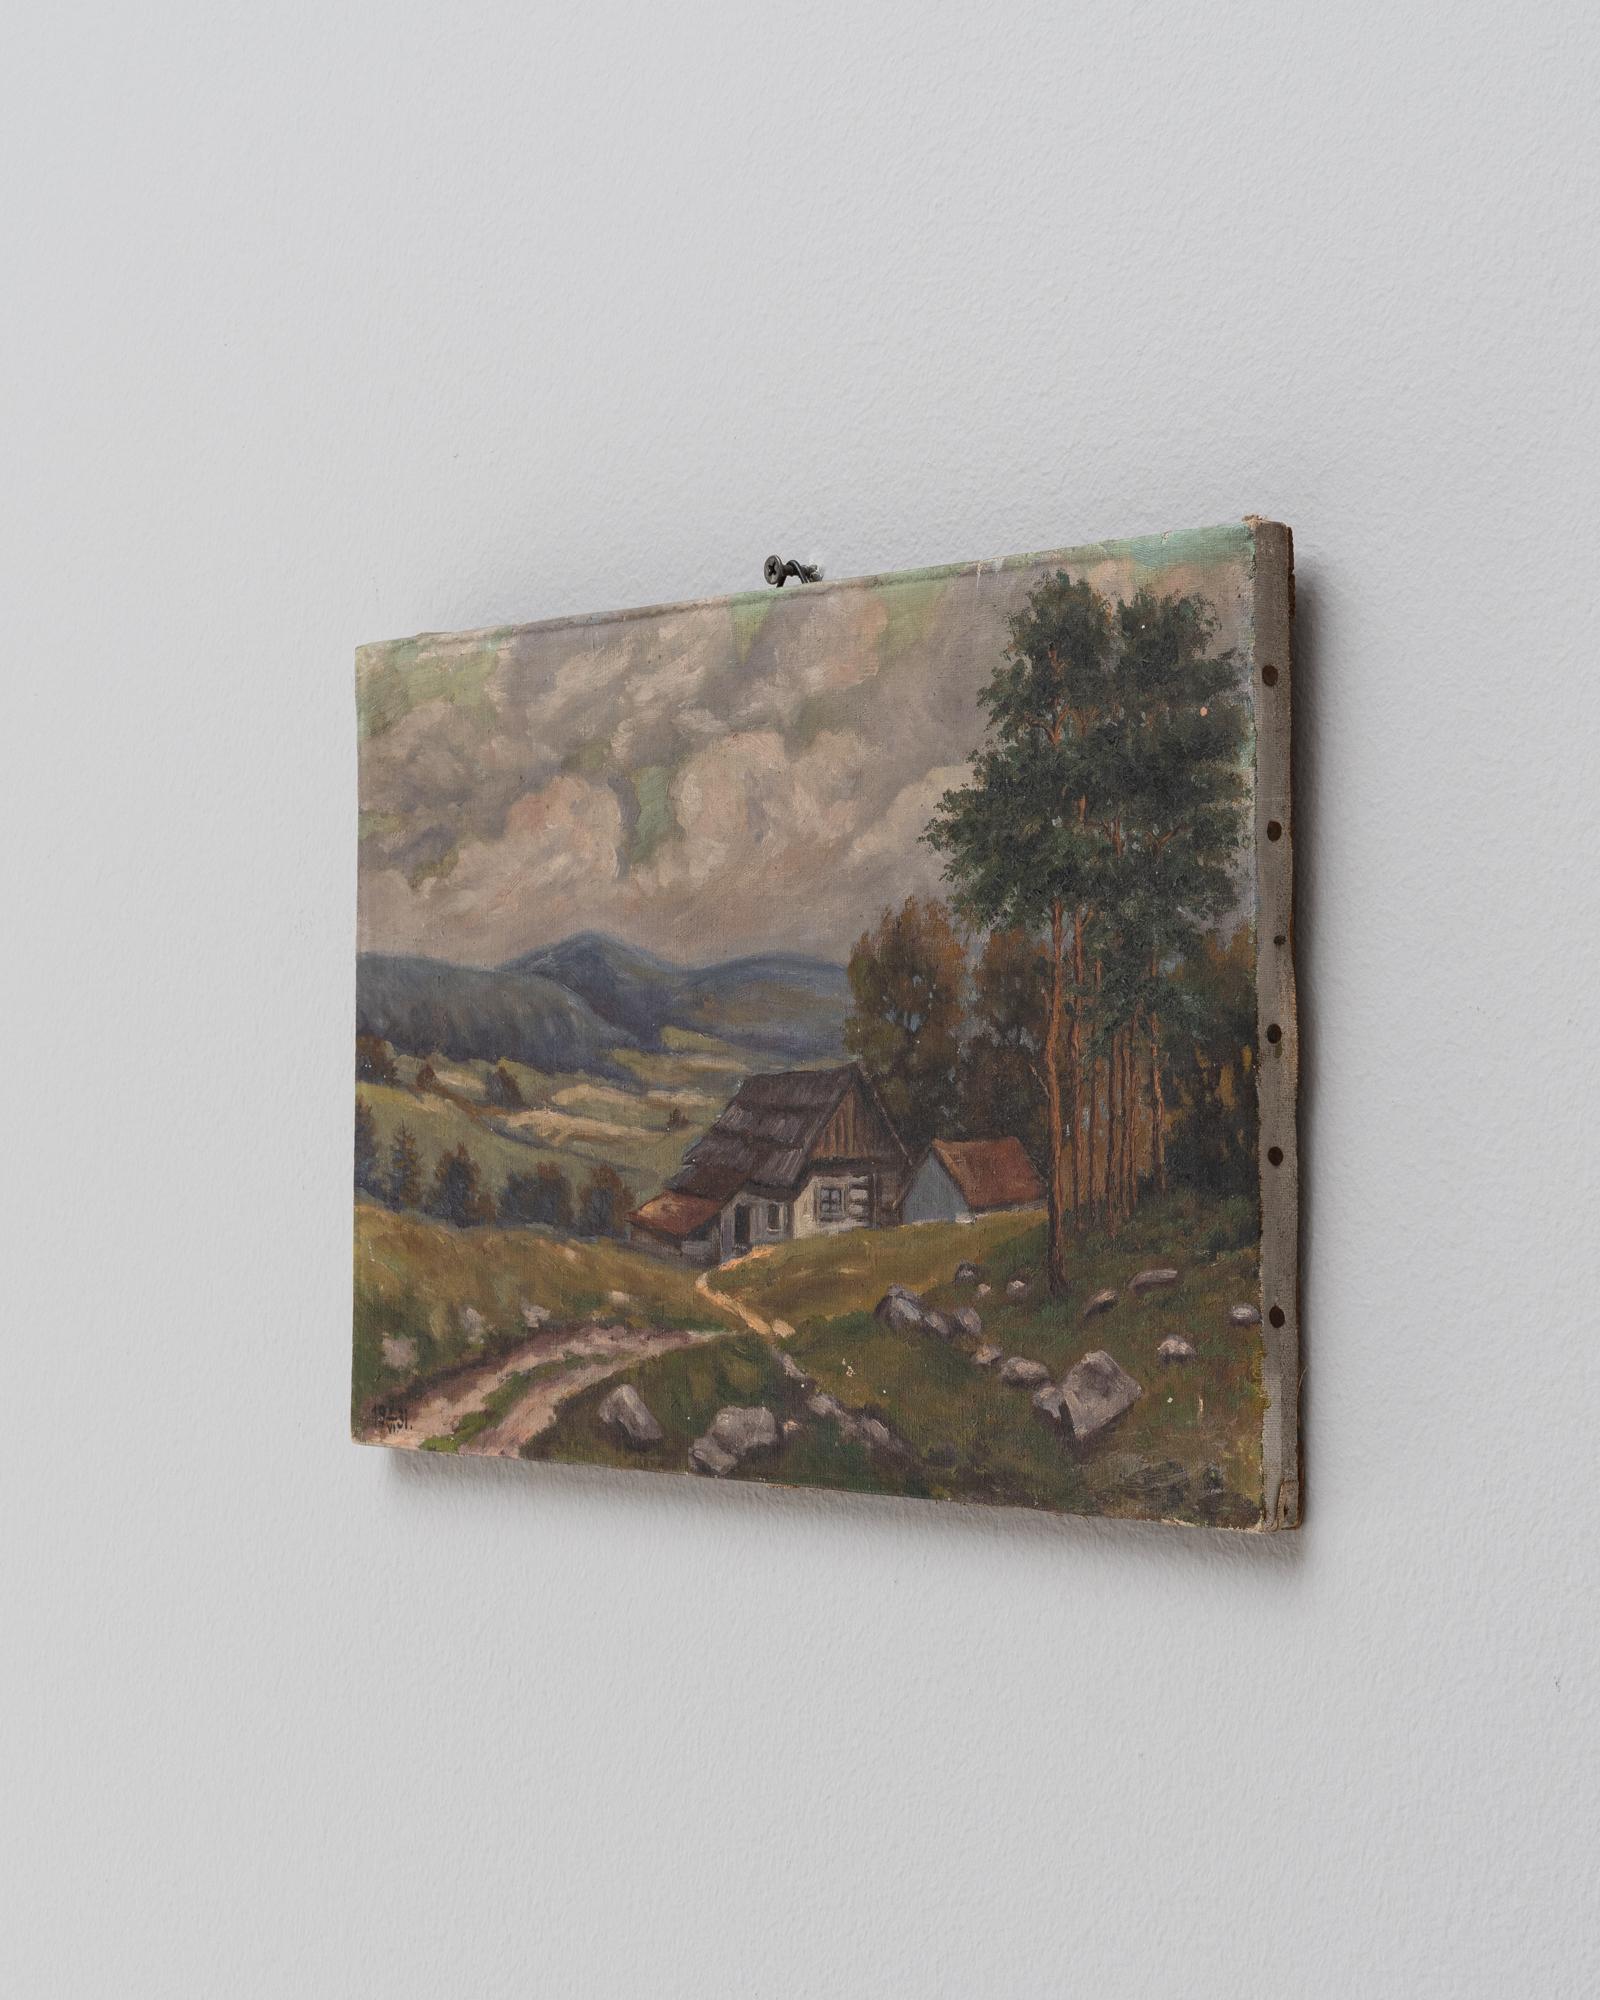 Dieses französische Gemälde aus dem frühen 20. Jahrhundert zeigt eine ruhige Landschaftsszene, die von der nuancierten Schönheit des ländlichen Frankreichs geprägt ist. Das Gemälde fängt eine ruhige Landschaft ein, in der sich rustikale Häuser an